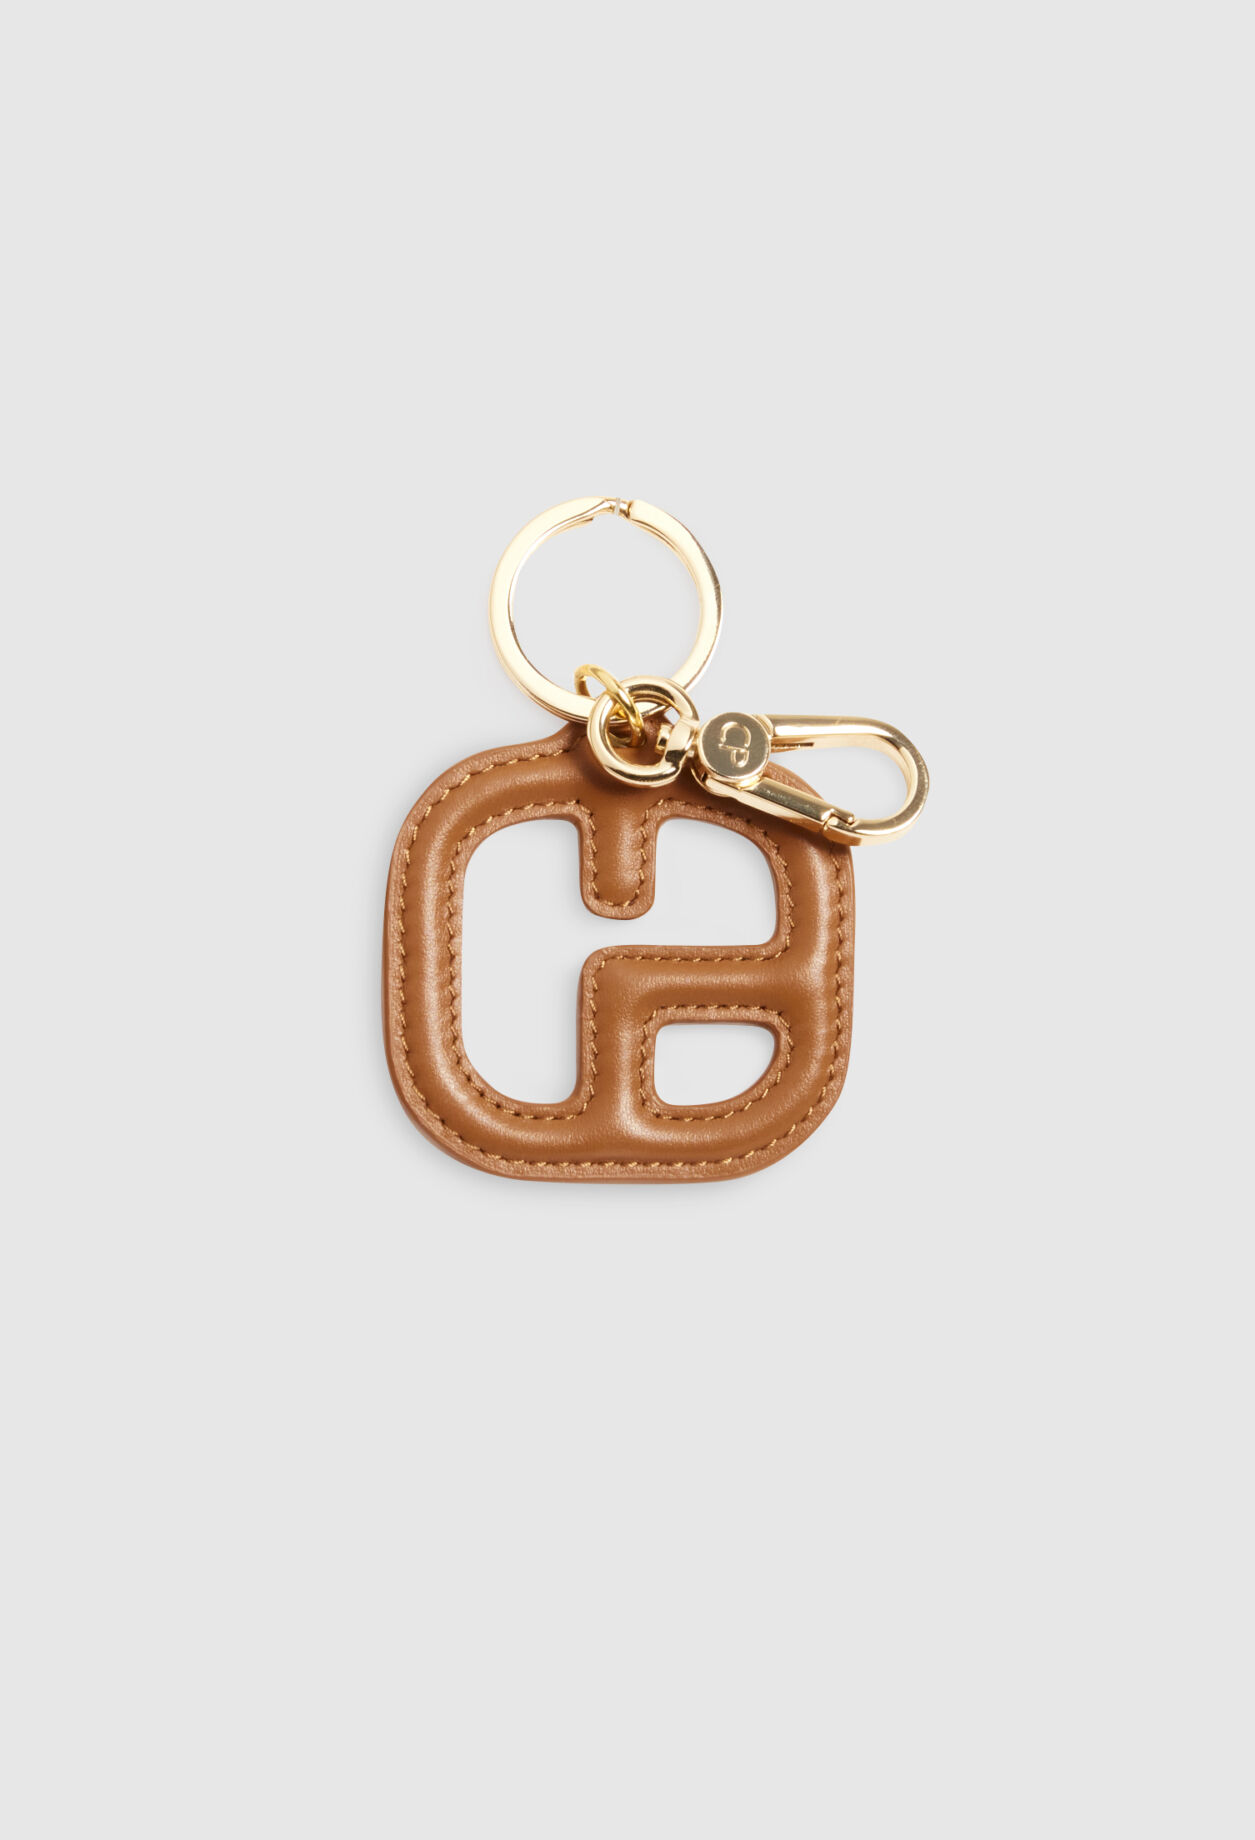 Camel leather key ring